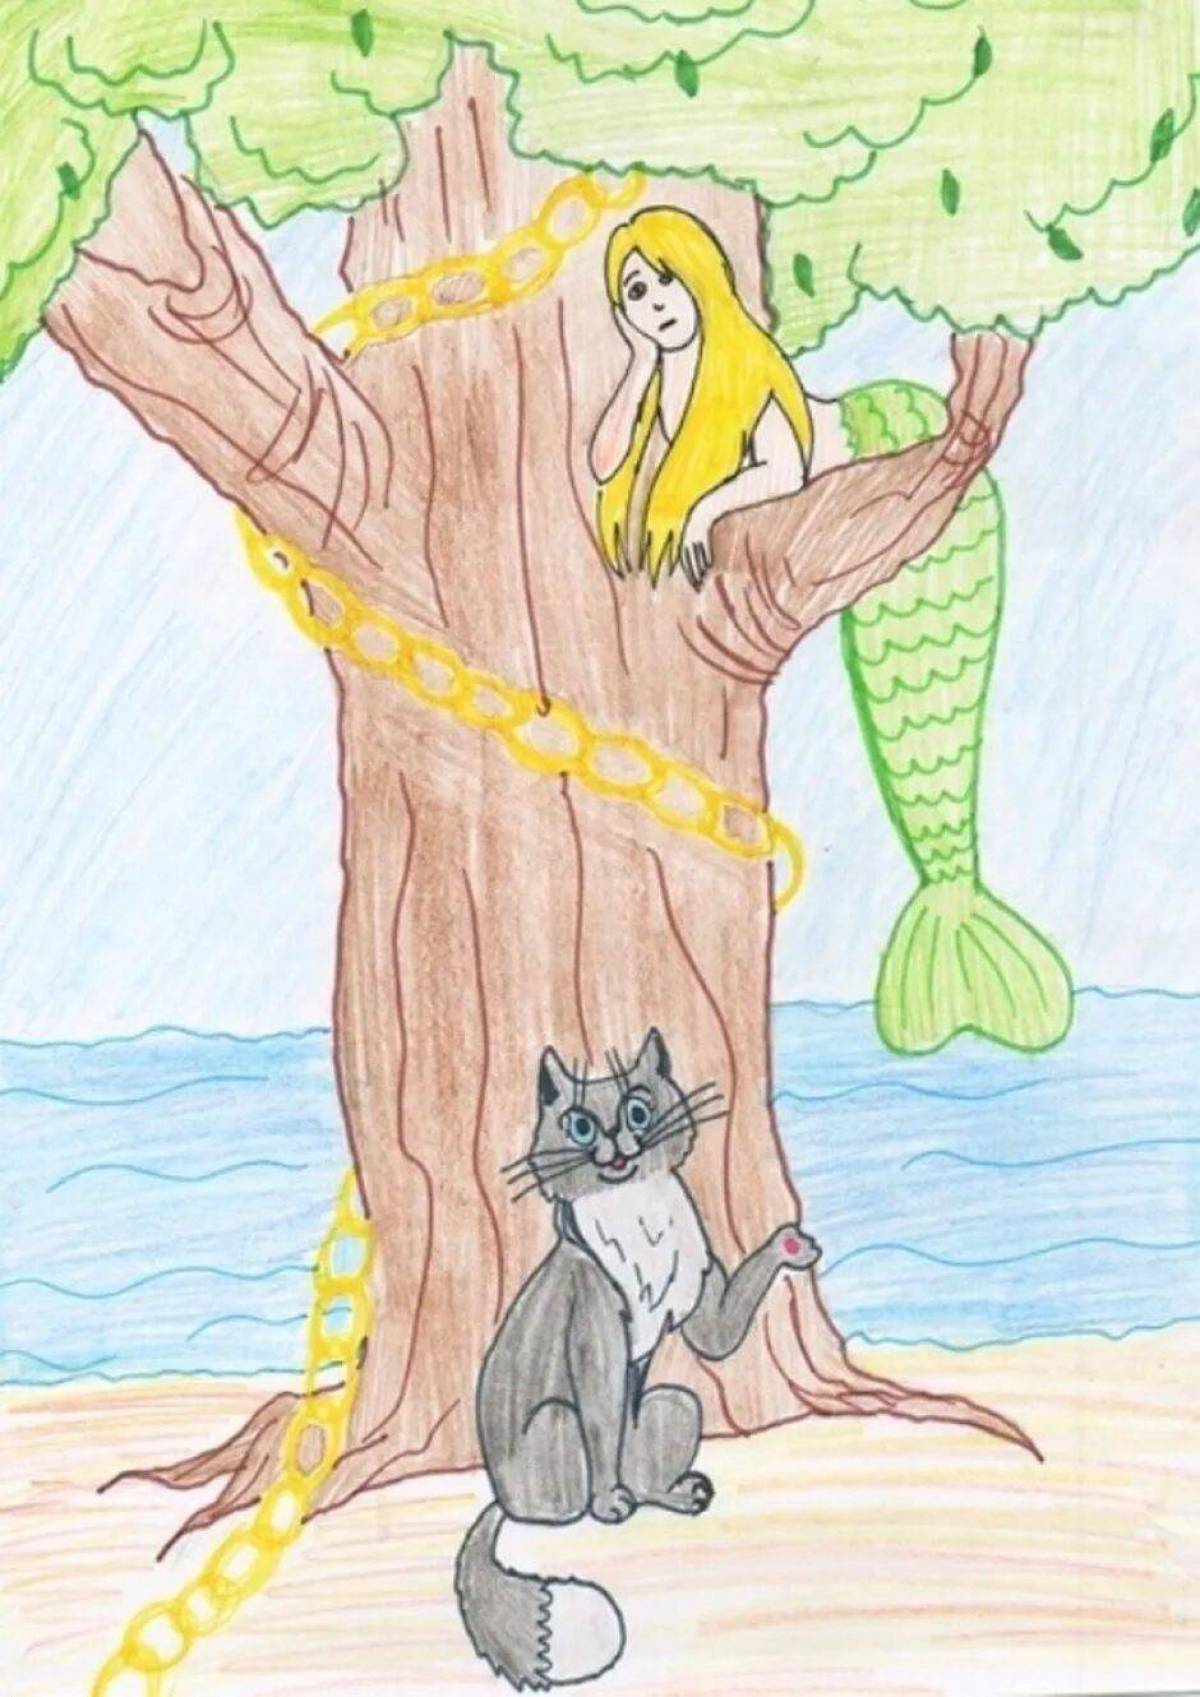 Картинка У лукоморья дуб зеленый для детей #29.